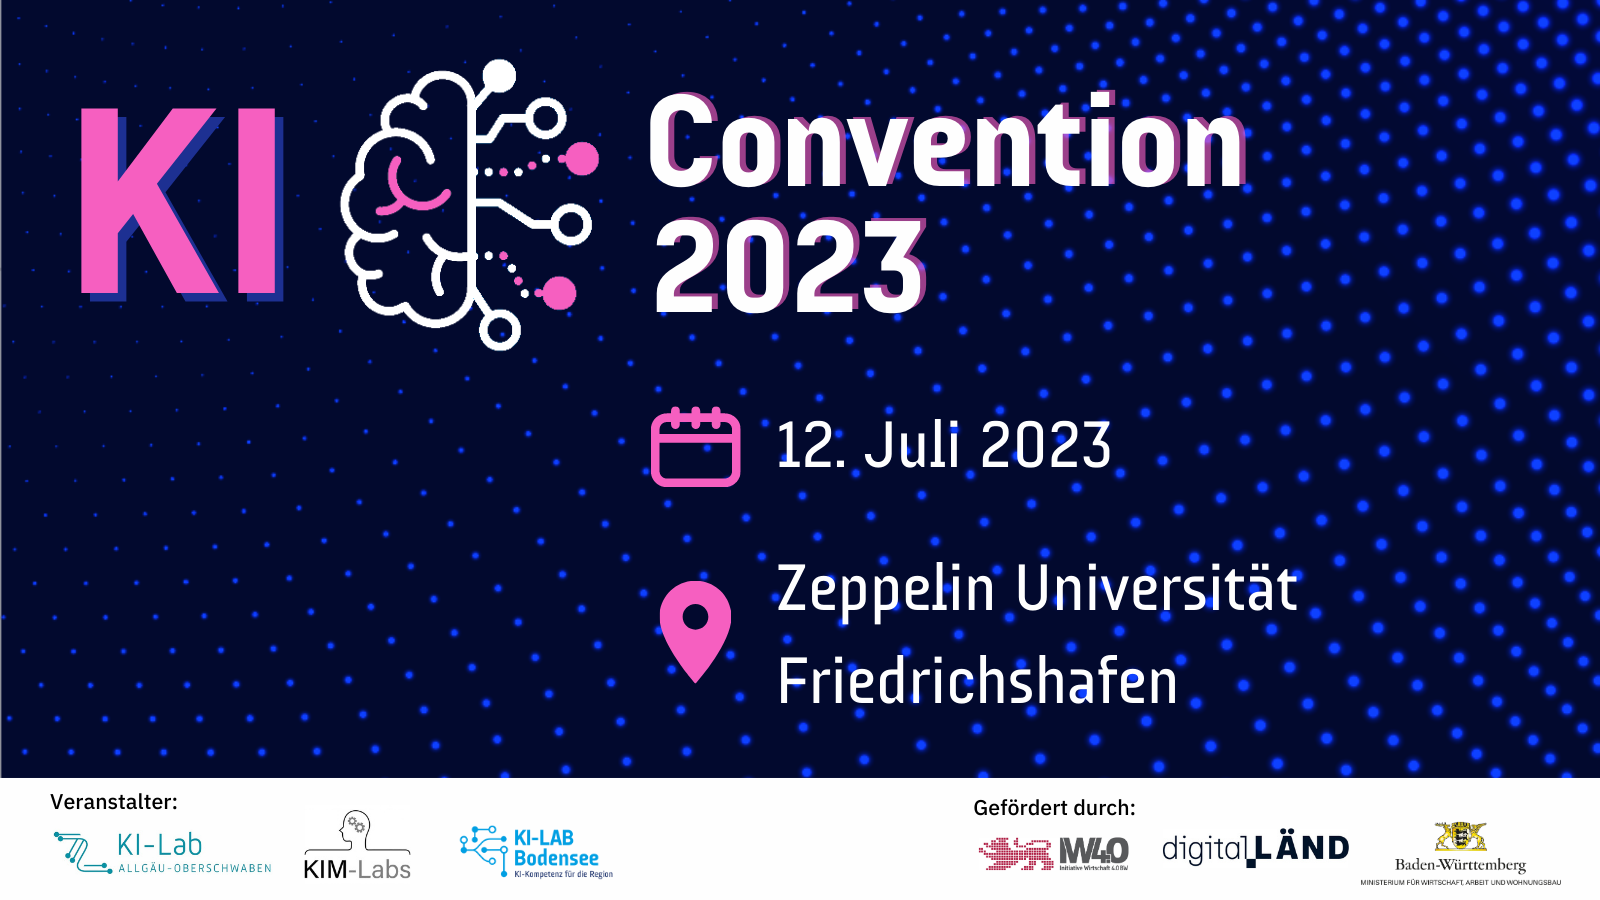 KI Convention 2023 Friedrichshafen